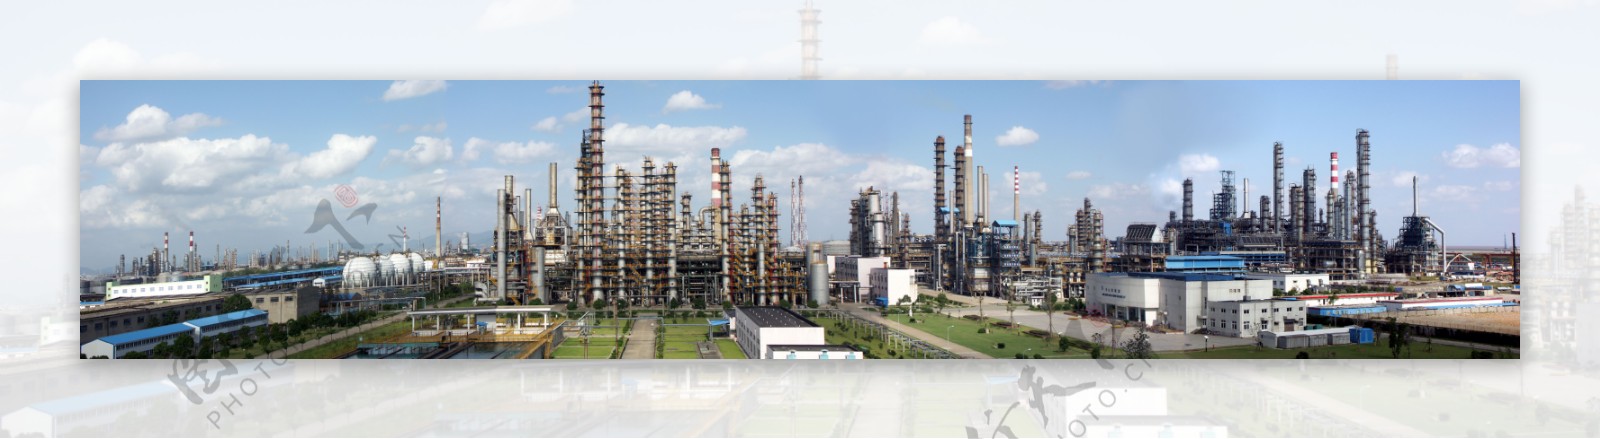 中国石化炼油装置图片